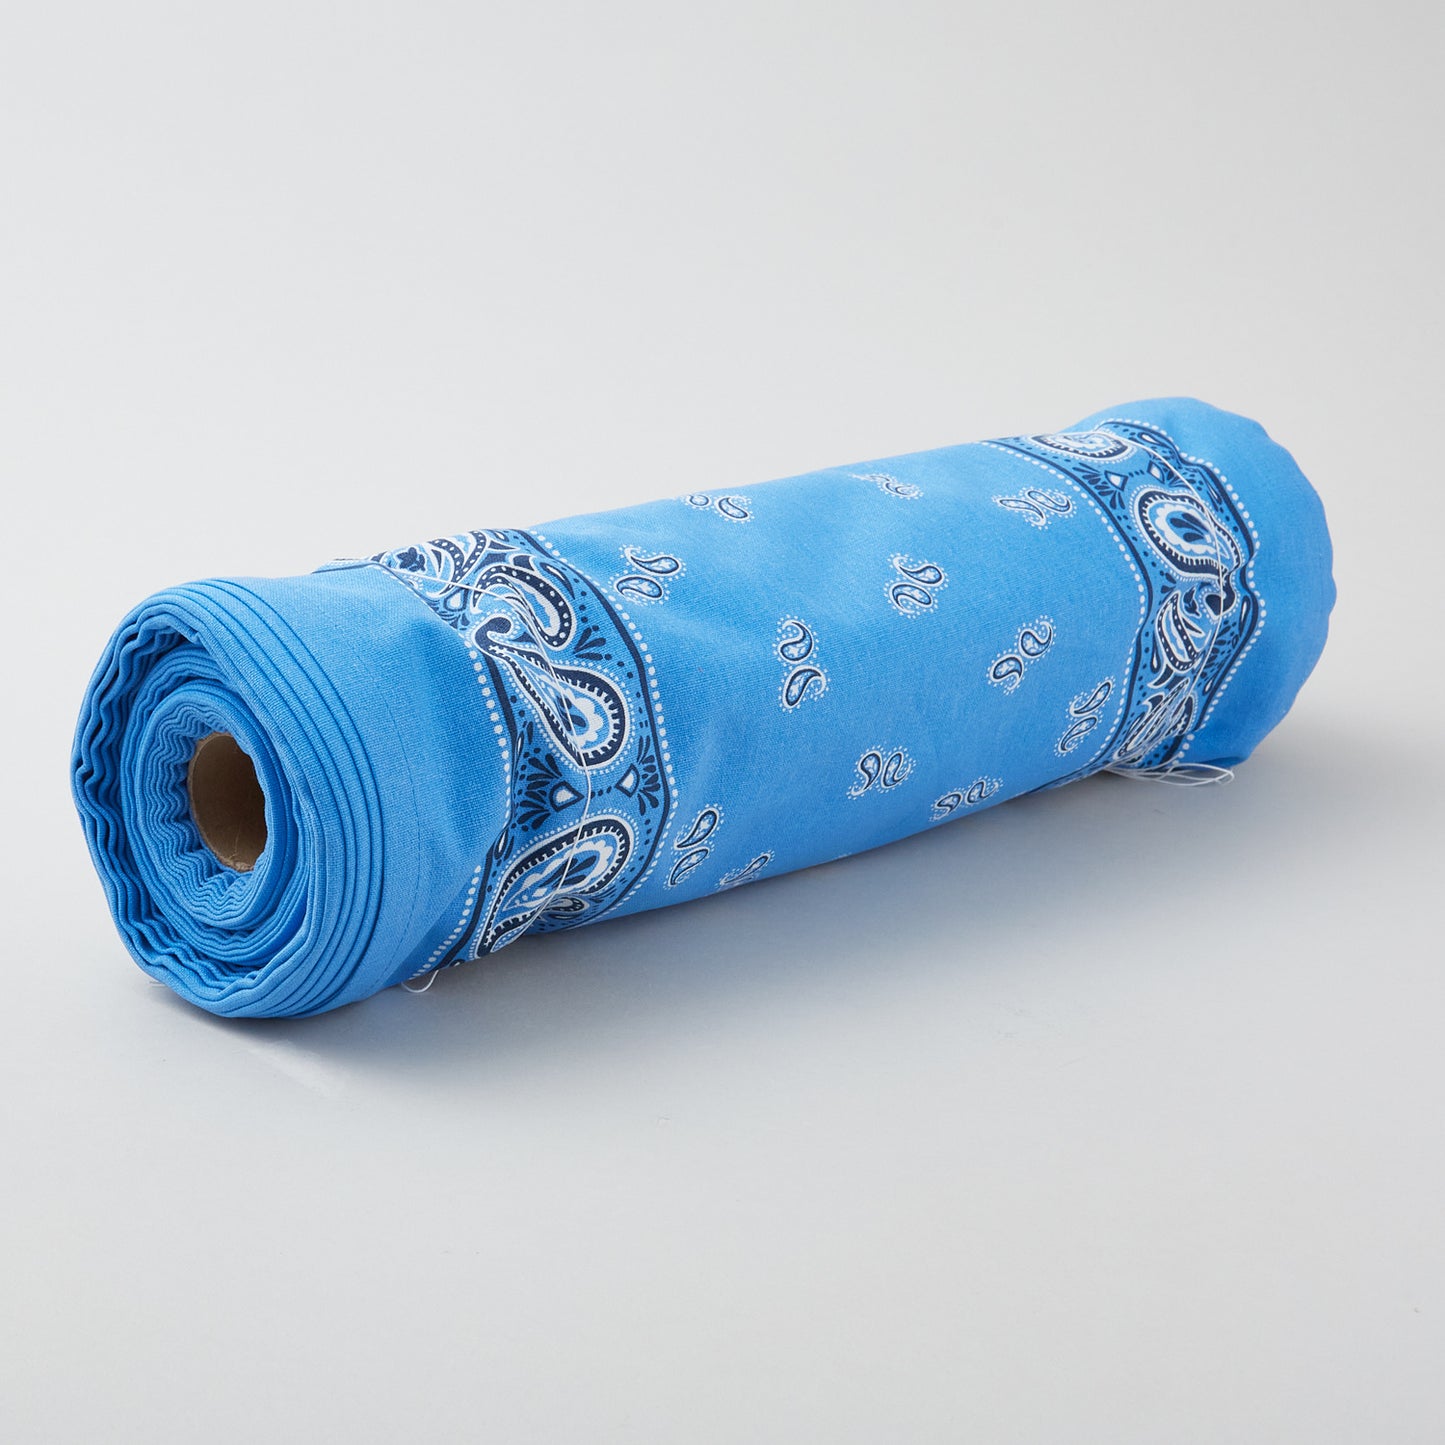 Classic Retro Toweling - Blue Bandana 16" Toweling Yardage Alternative View #1